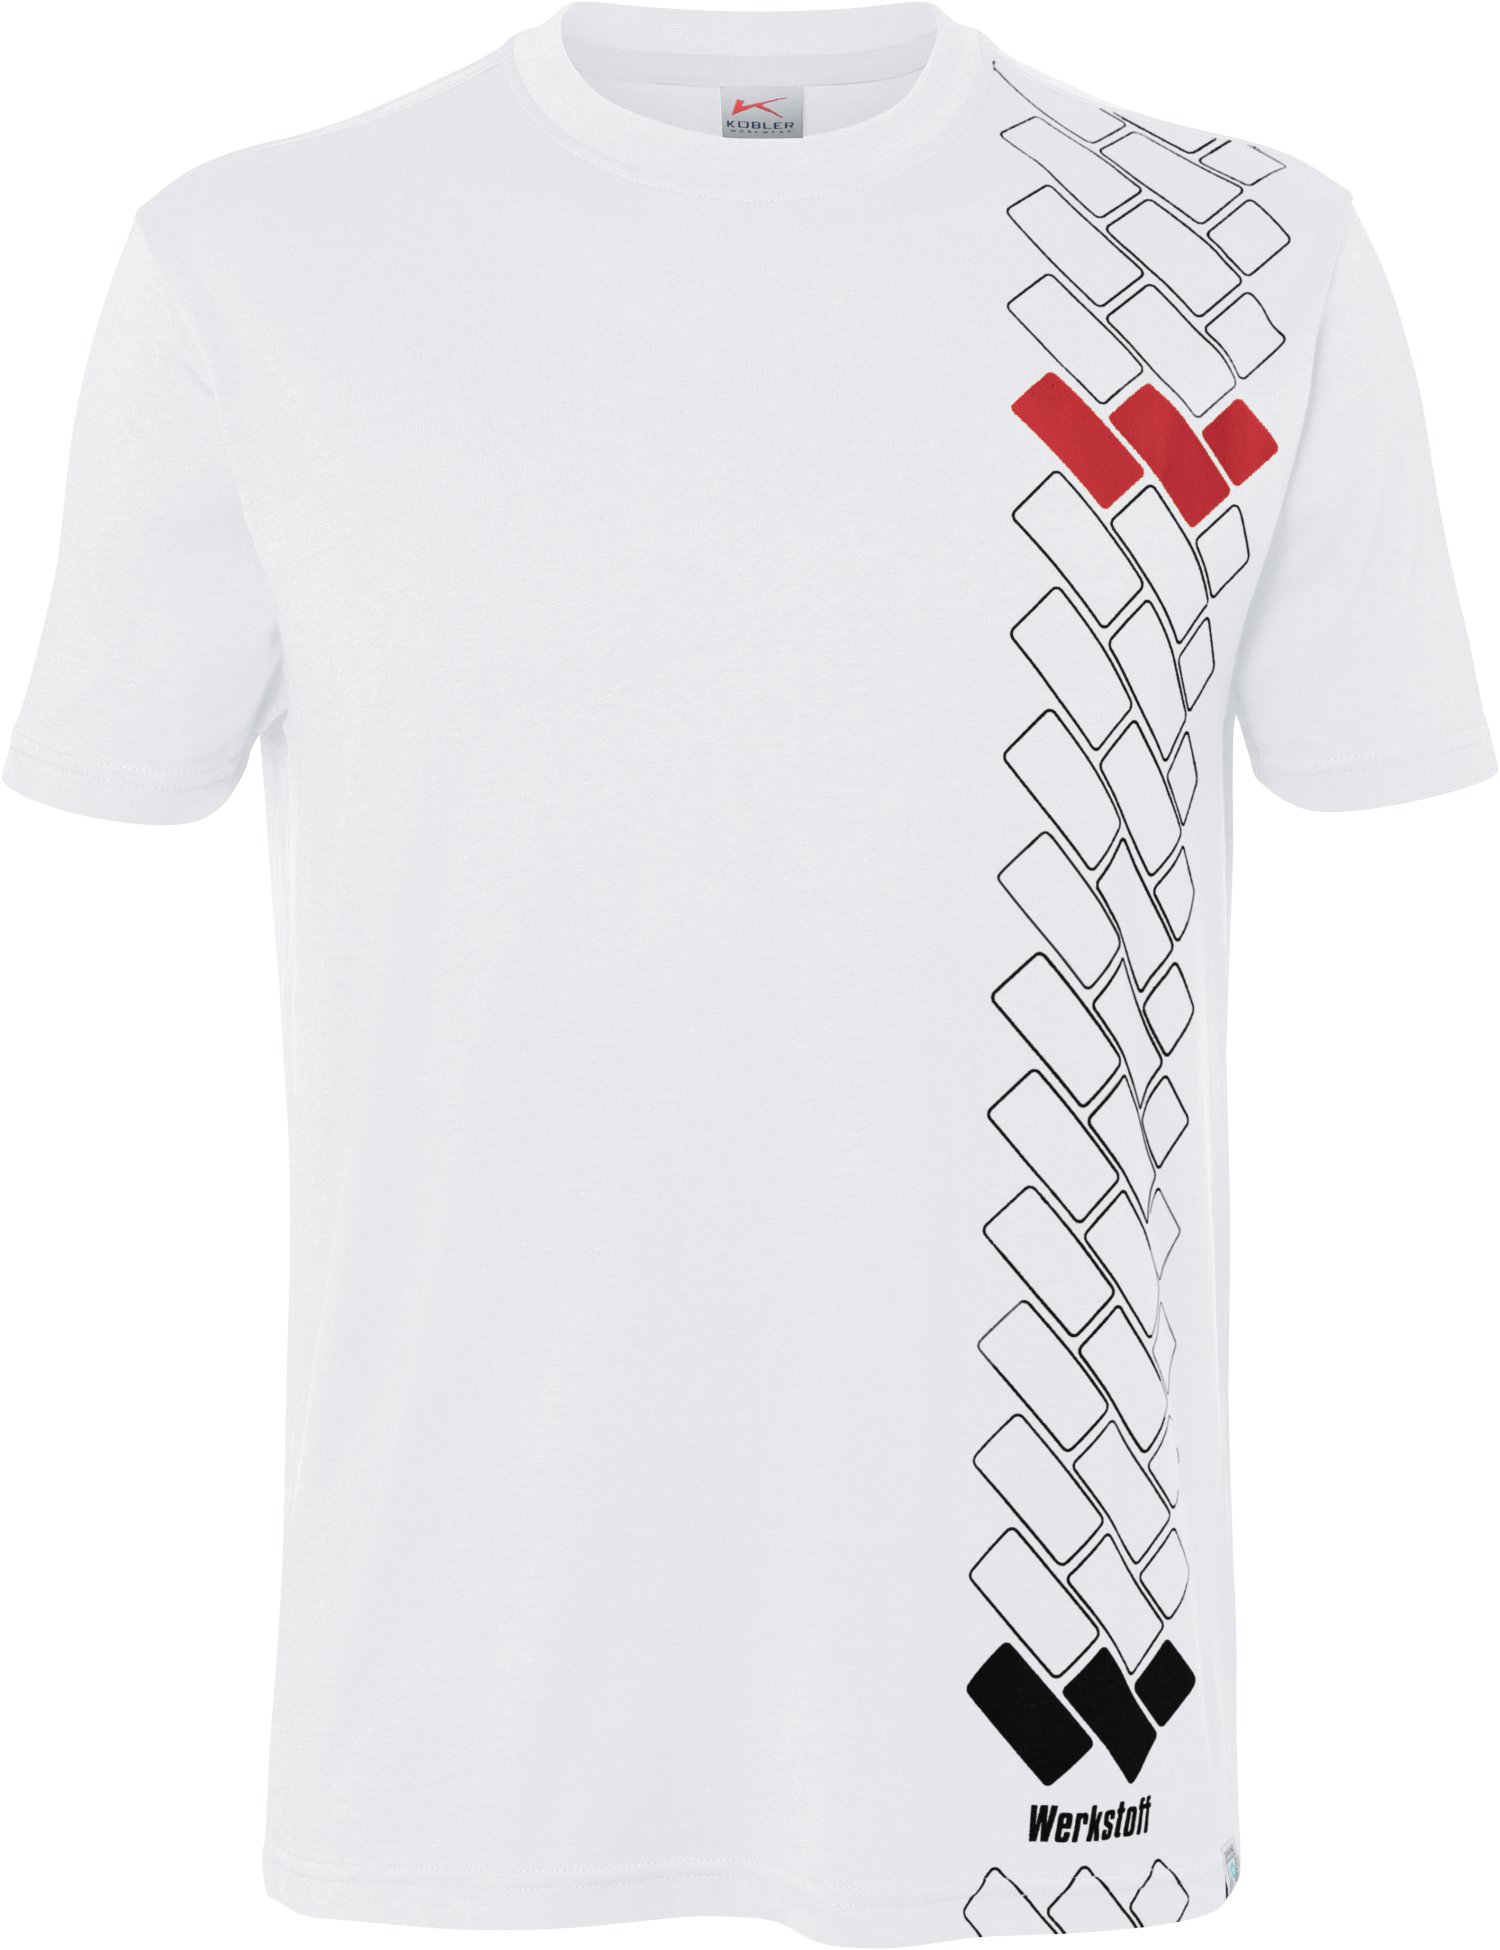 WERKSTOFF T-Shirt Premium XL weiß